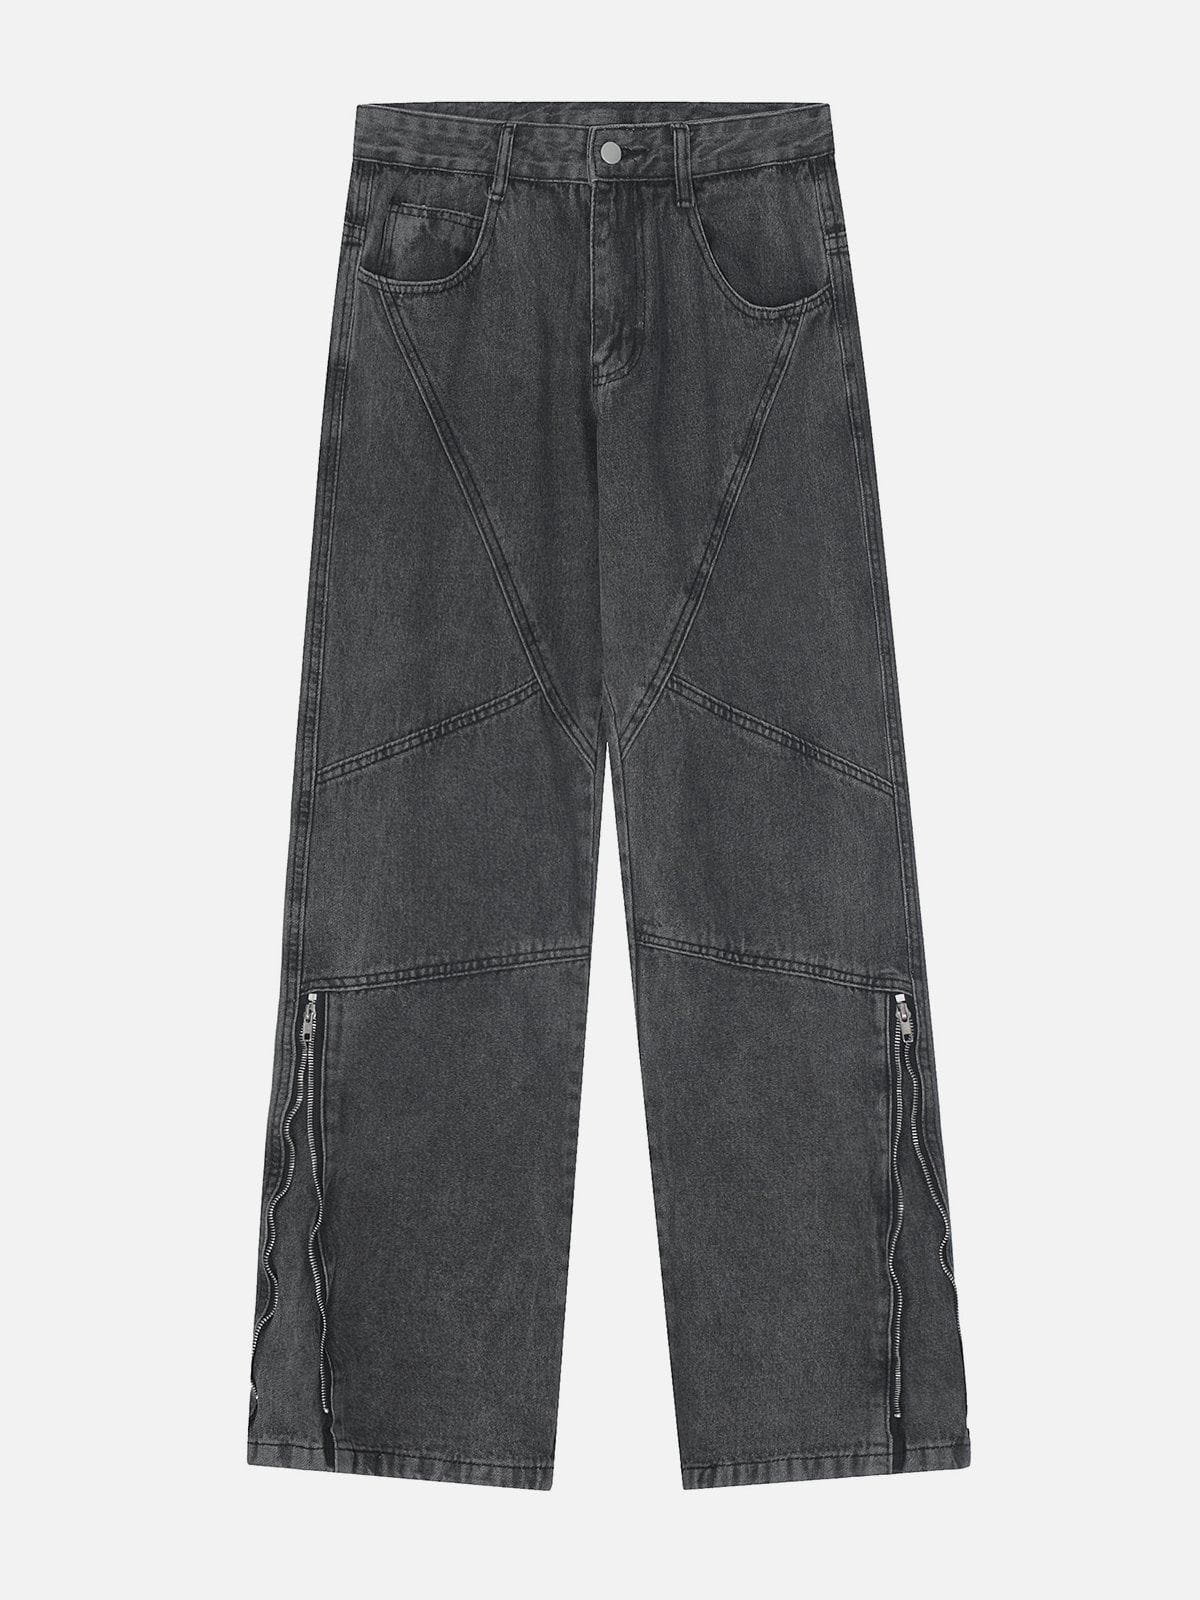 Eprezzy® - Side Zippers Jeans Streetwear Fashion - eprezzy.com